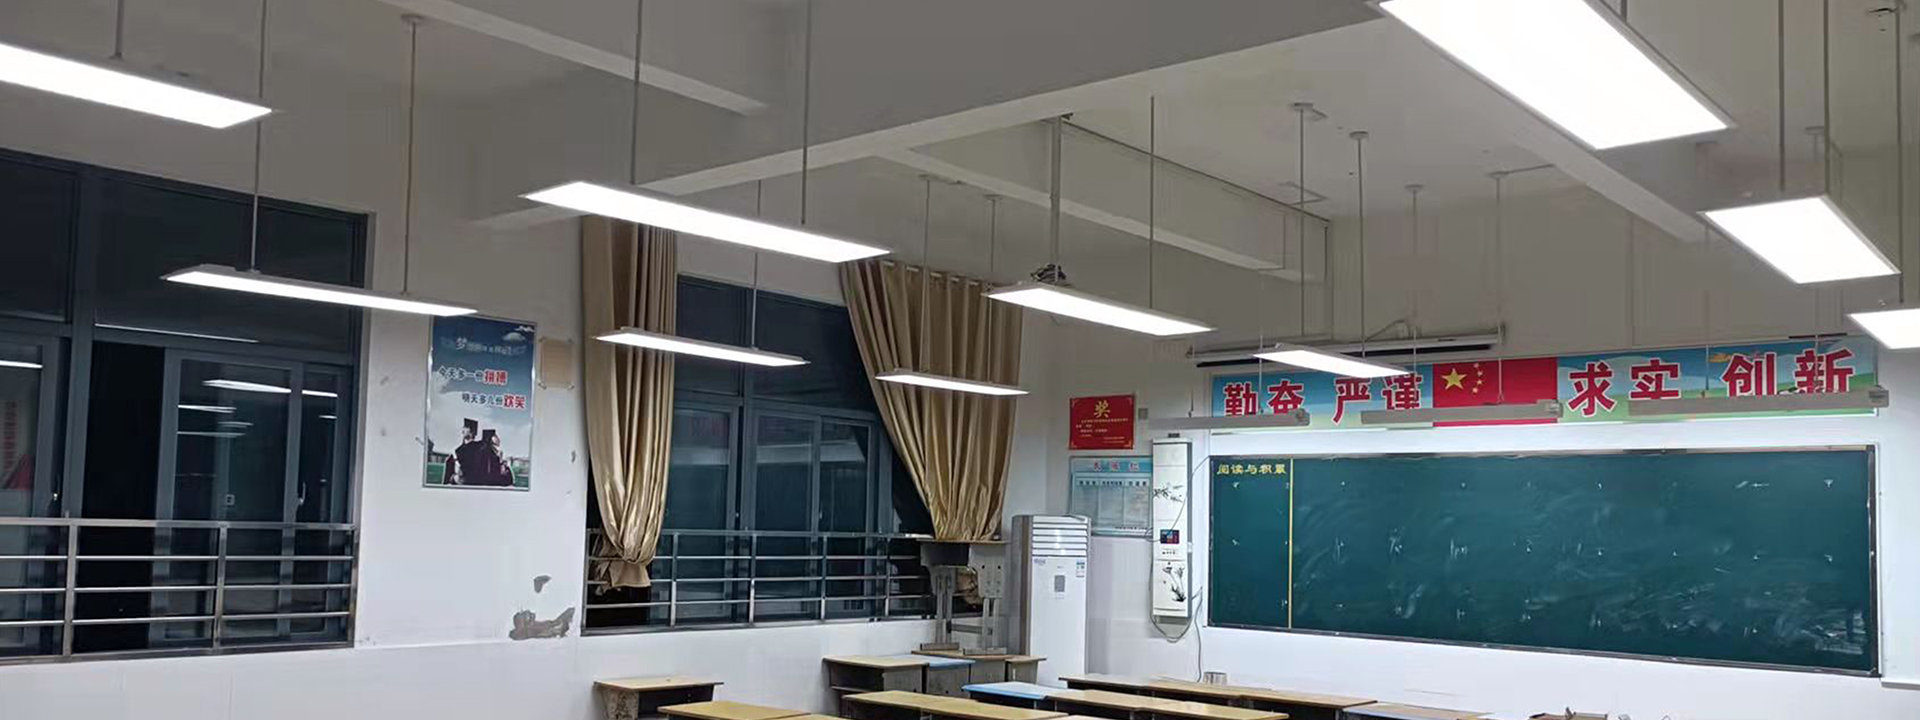 响水县公办中小学教室增光采购项目